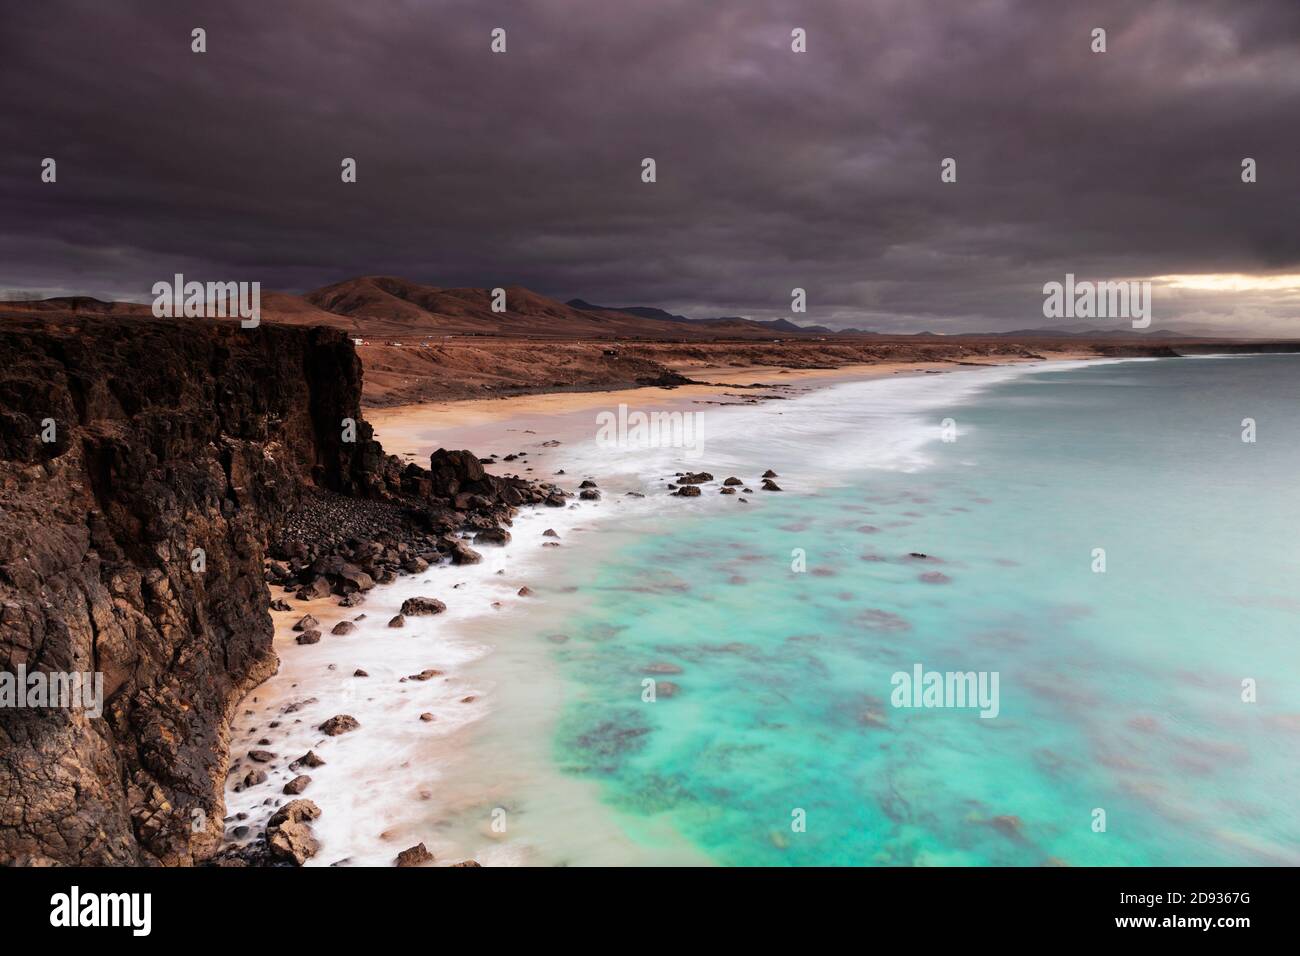 Europe, Spain, Canary Islands, Fuerteventura, El Cotillo Stock Photo